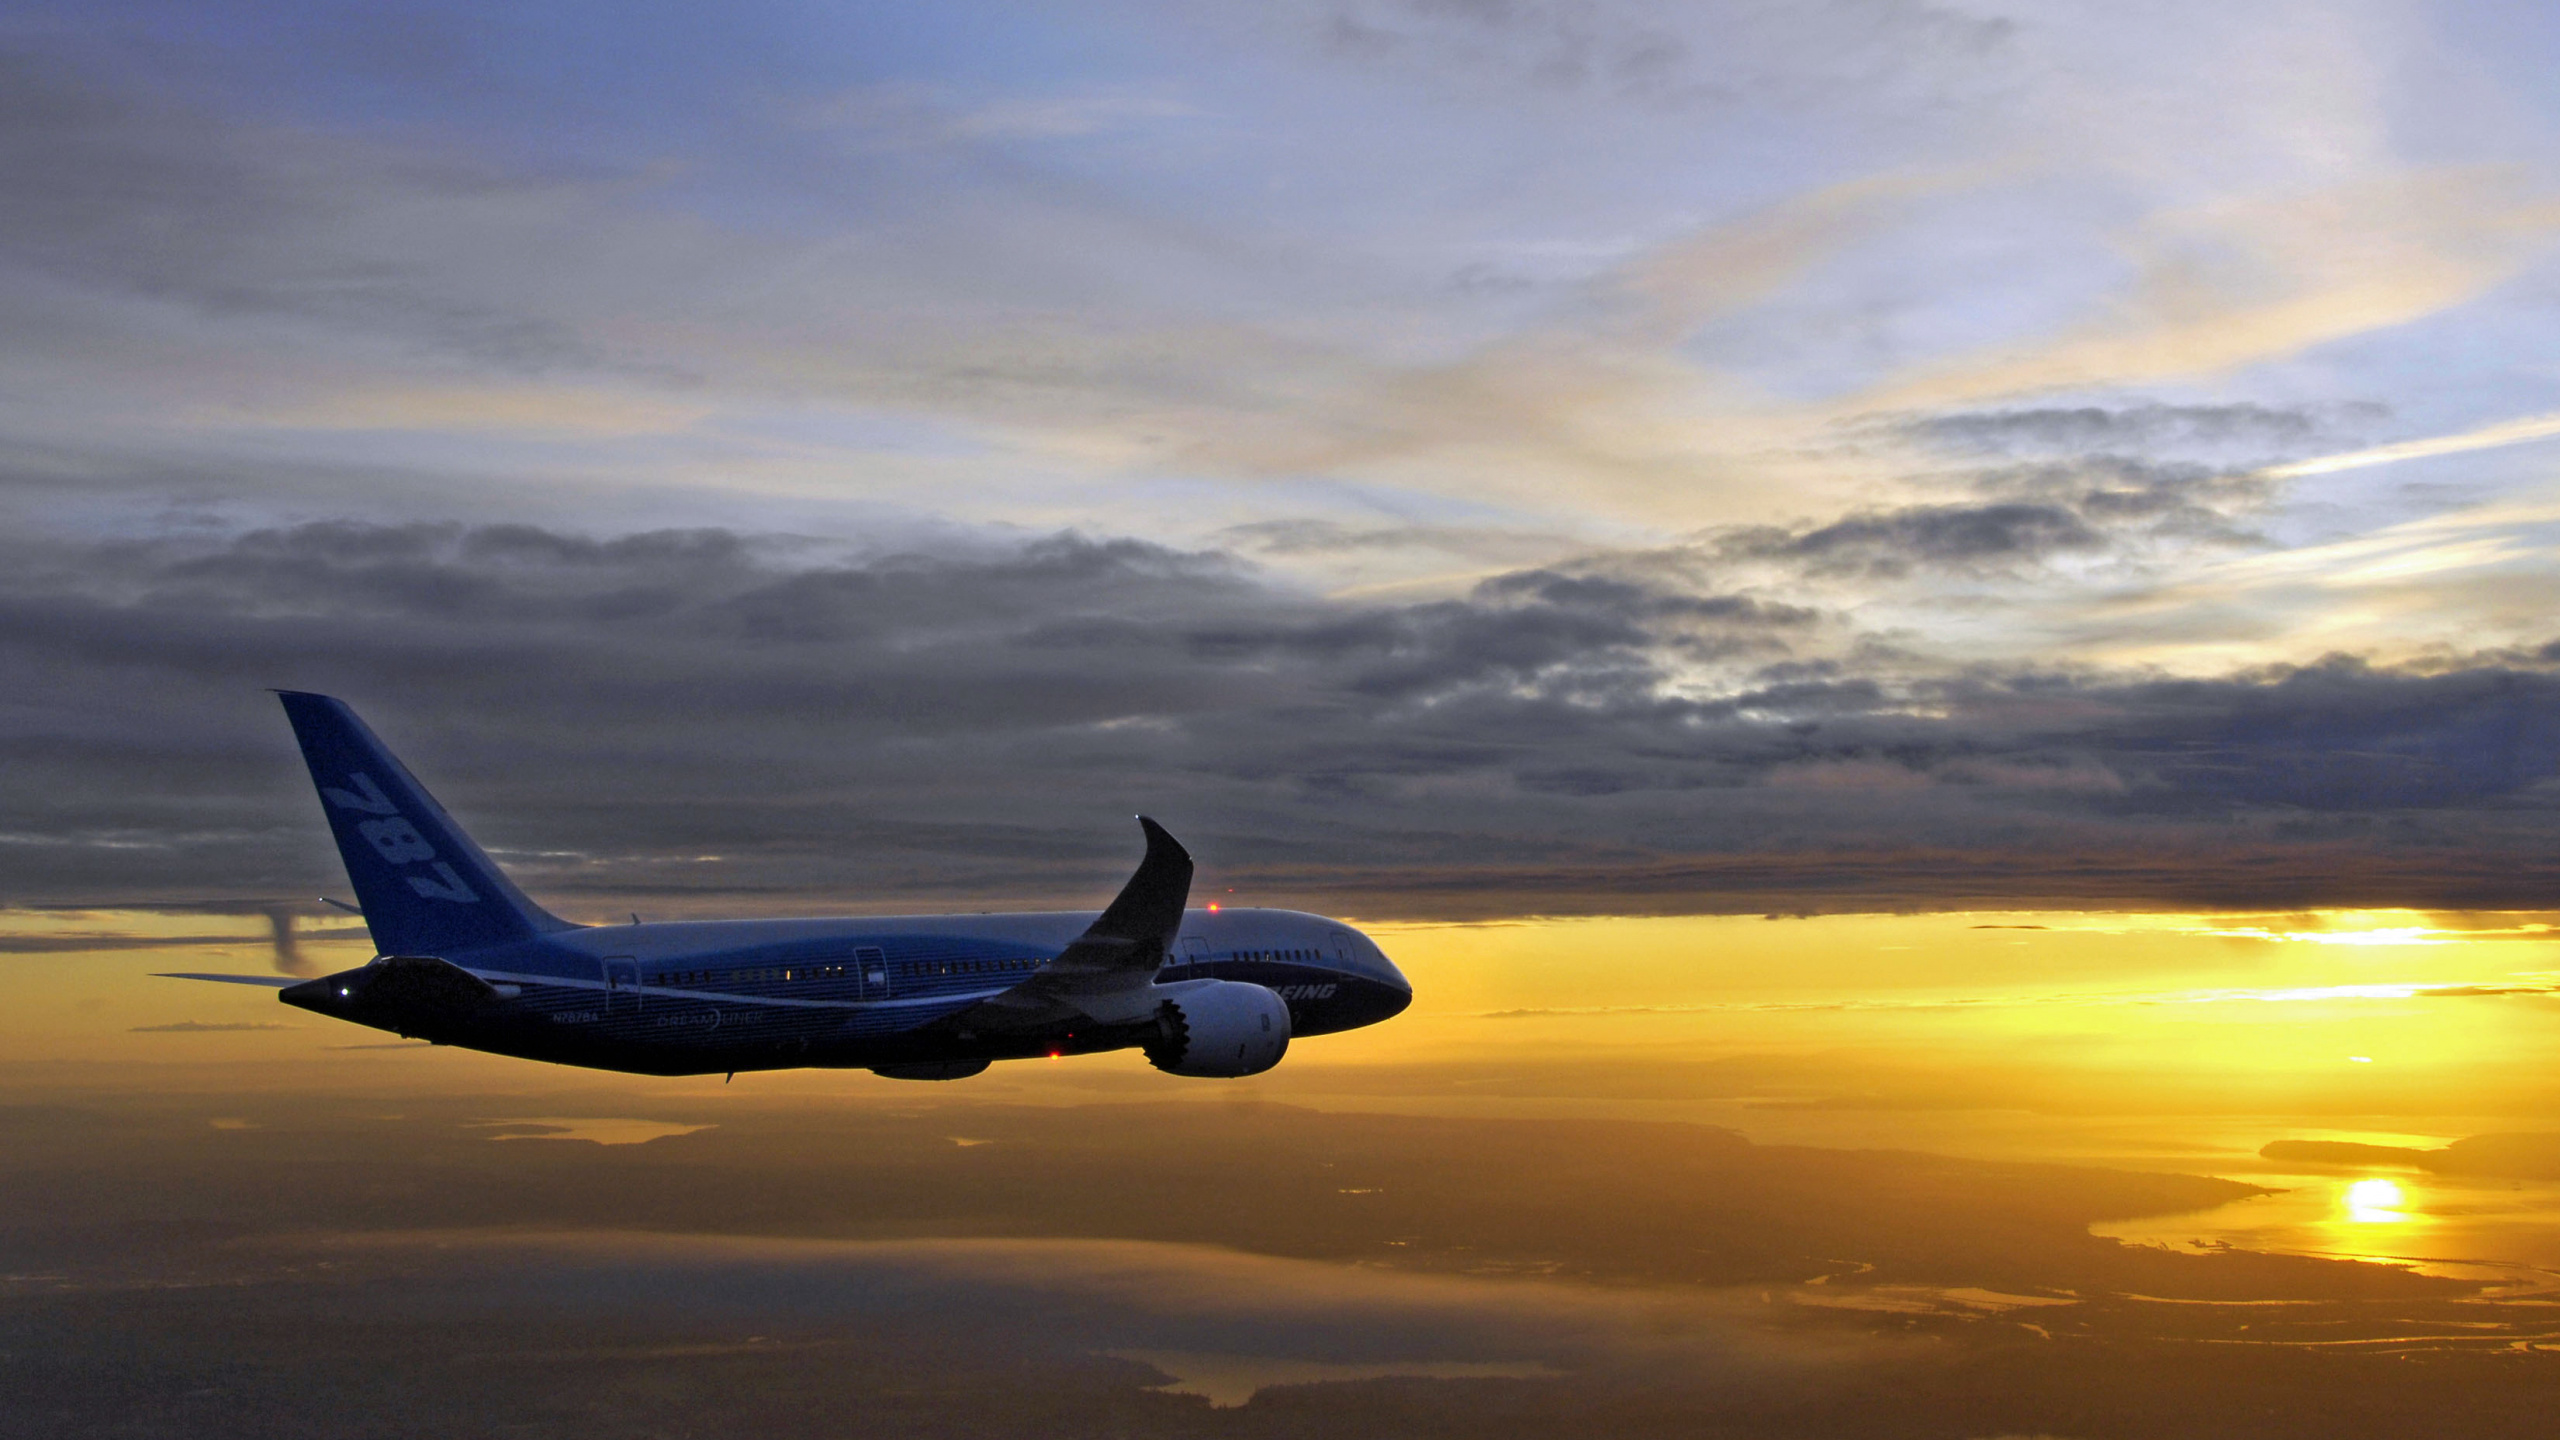 波音787, 波音, 客机, 空中旅行, 航空公司 壁纸 2560x1440 允许